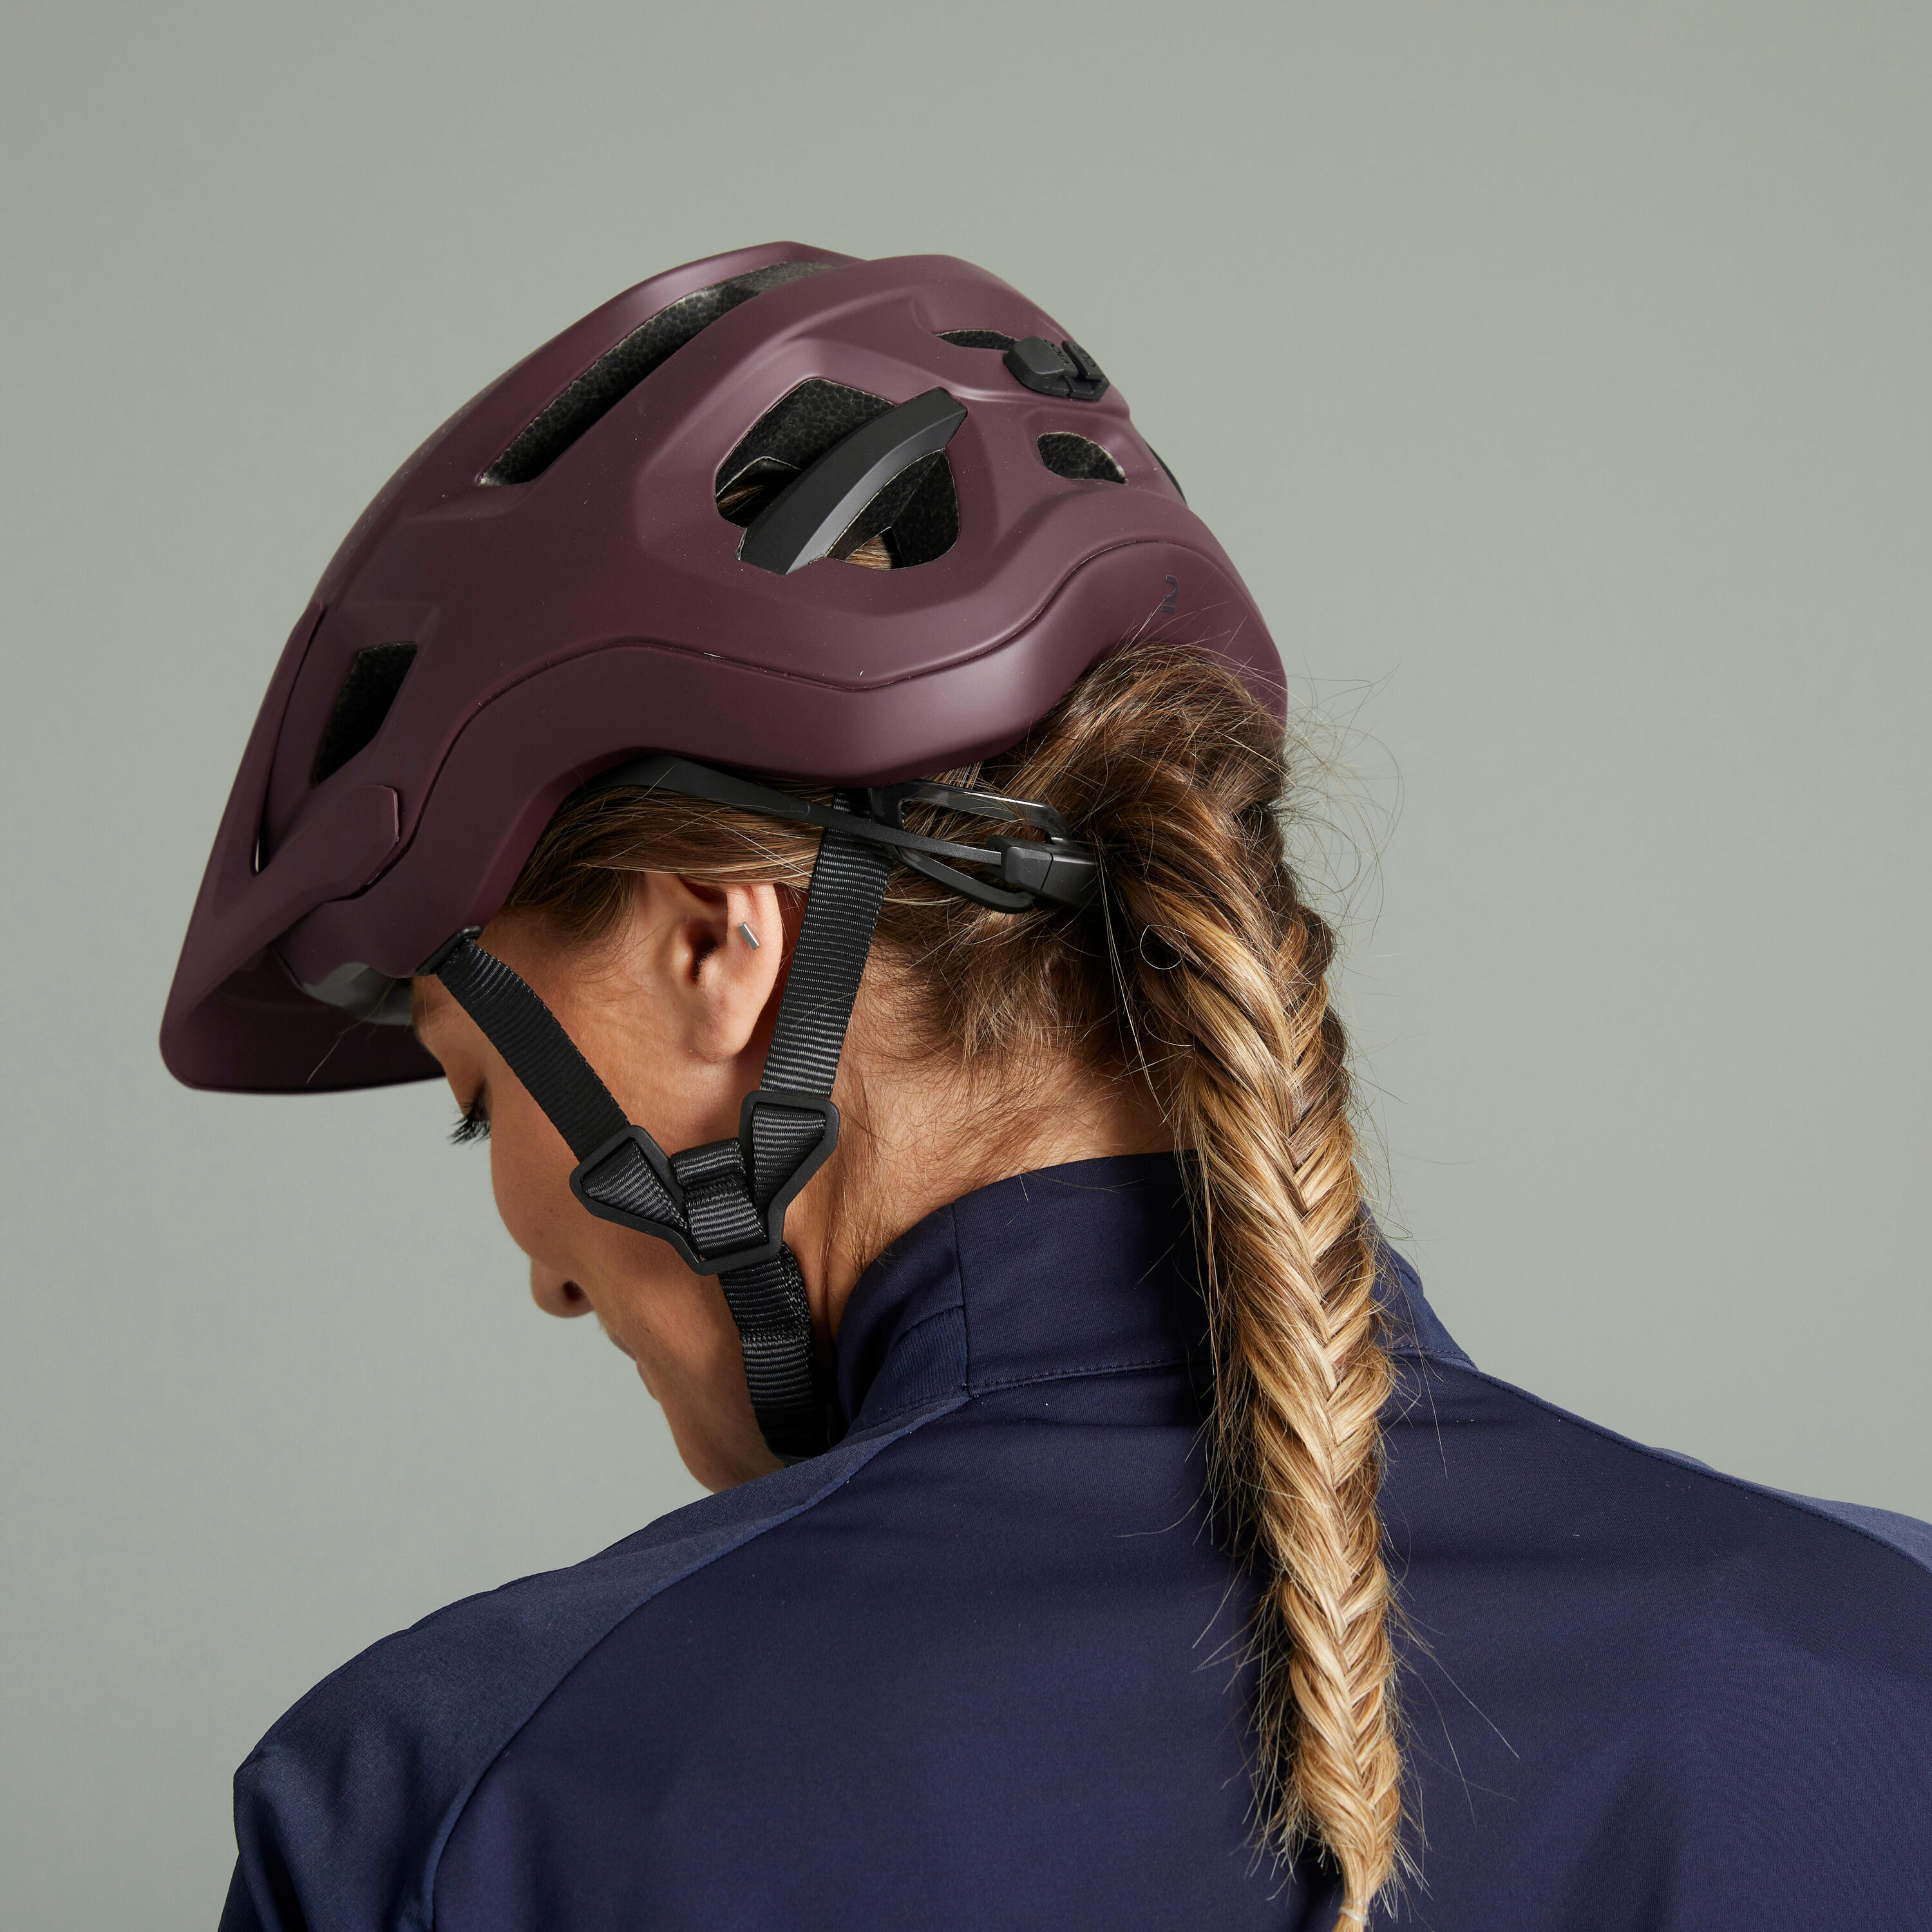 Mountain Bike Helmet EXPL 500 - Burgundy 7/18